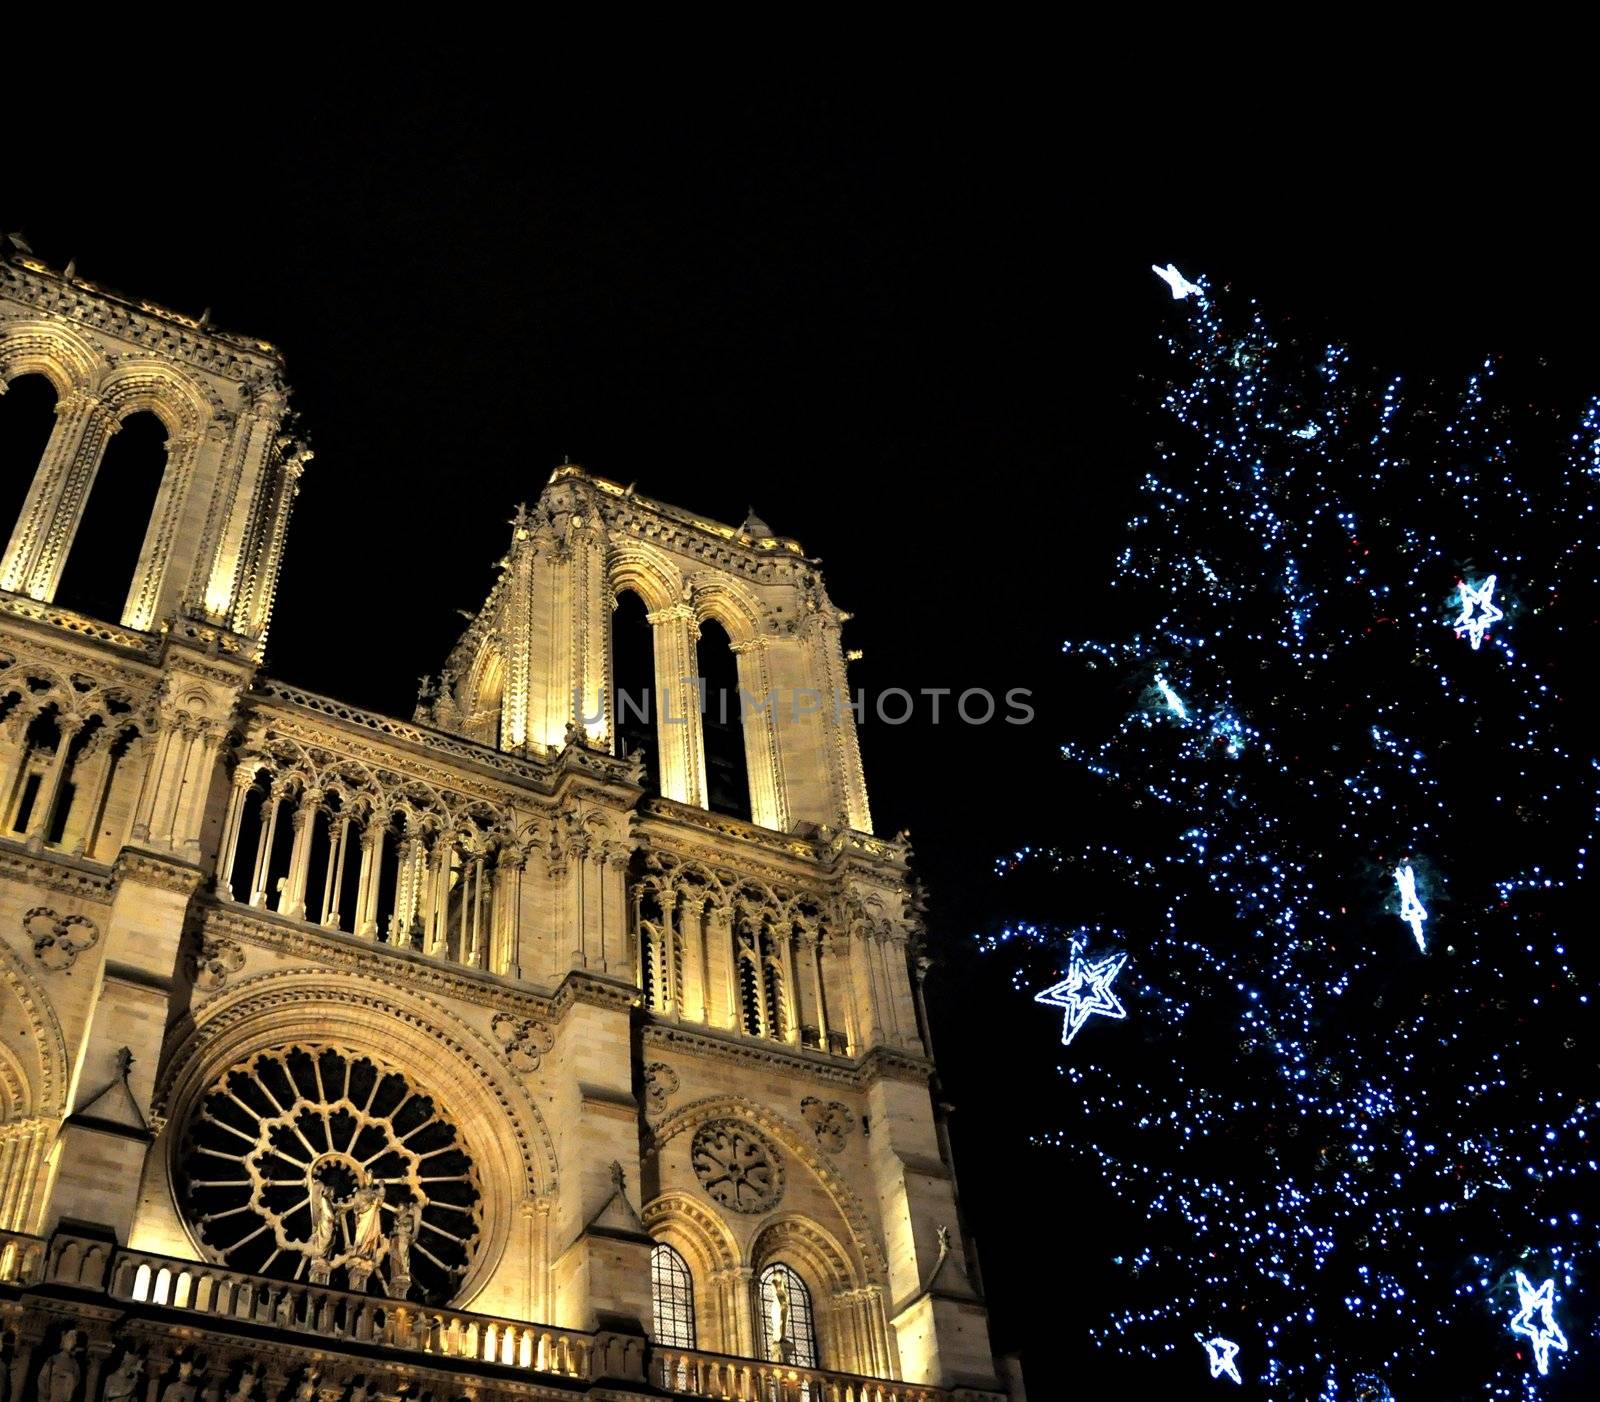 Notre-Dame de Paris at Christmas, France